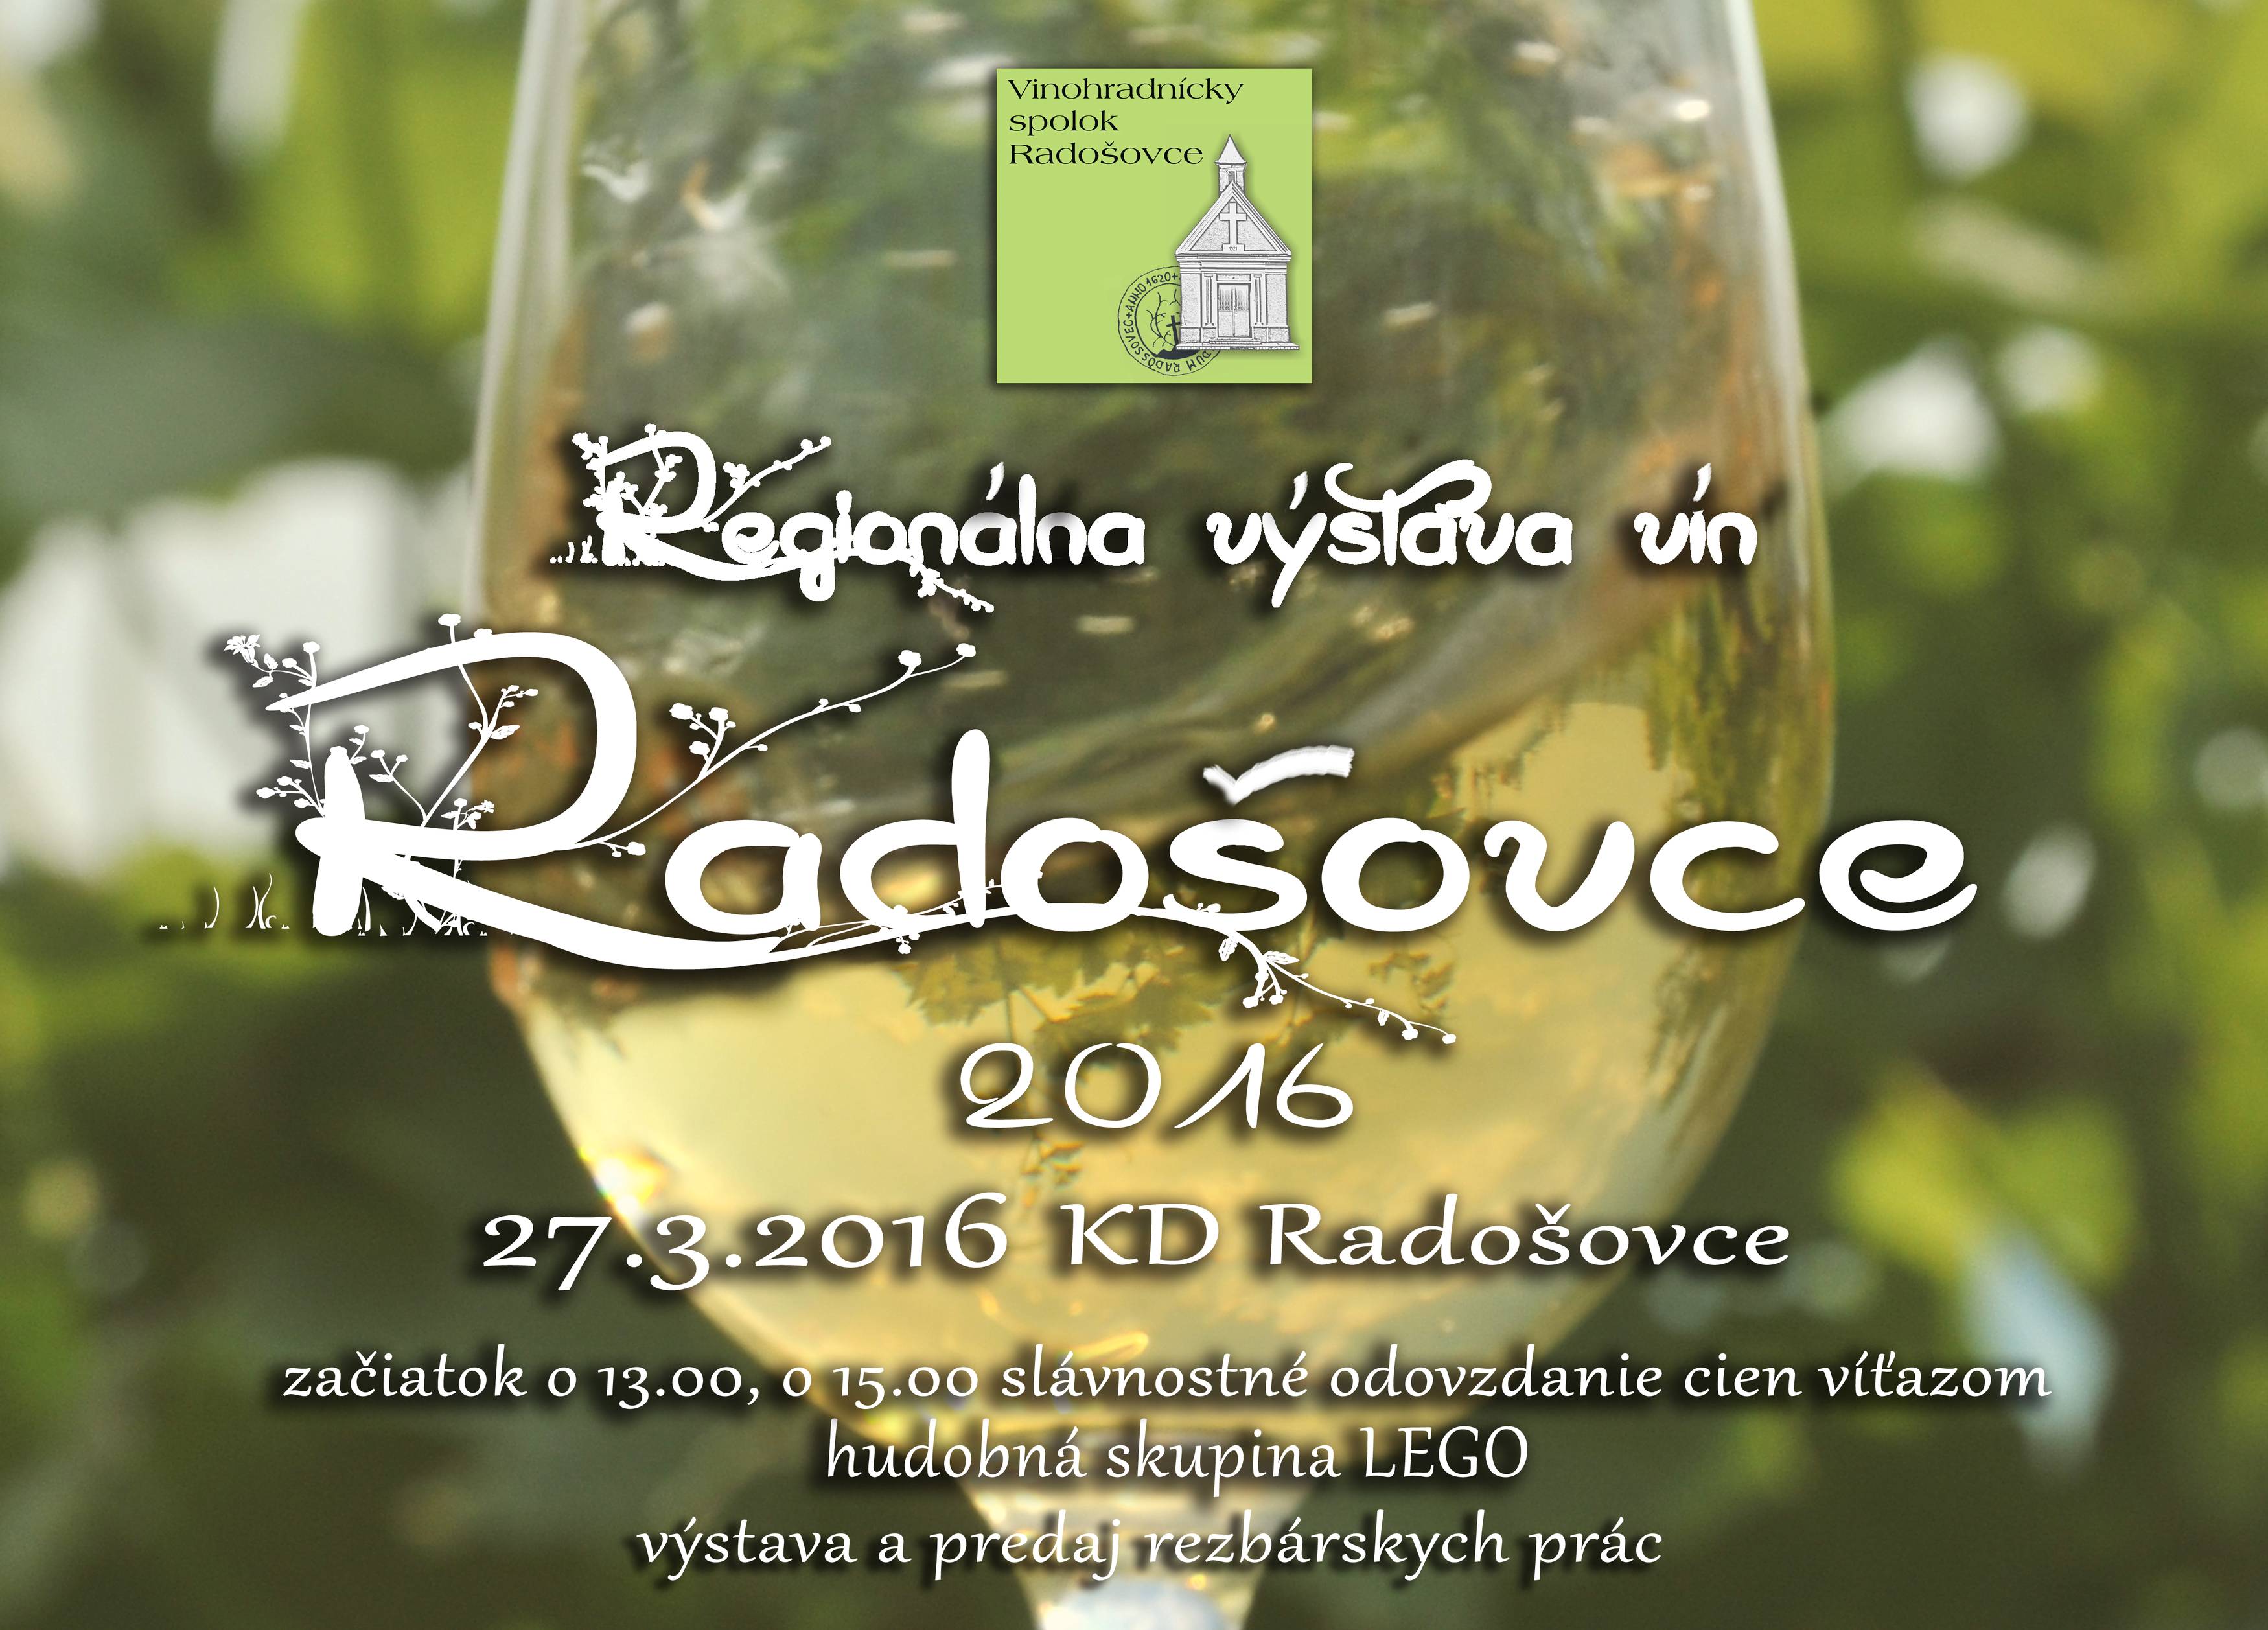 Regionlna vstava vn Radoovce 2016